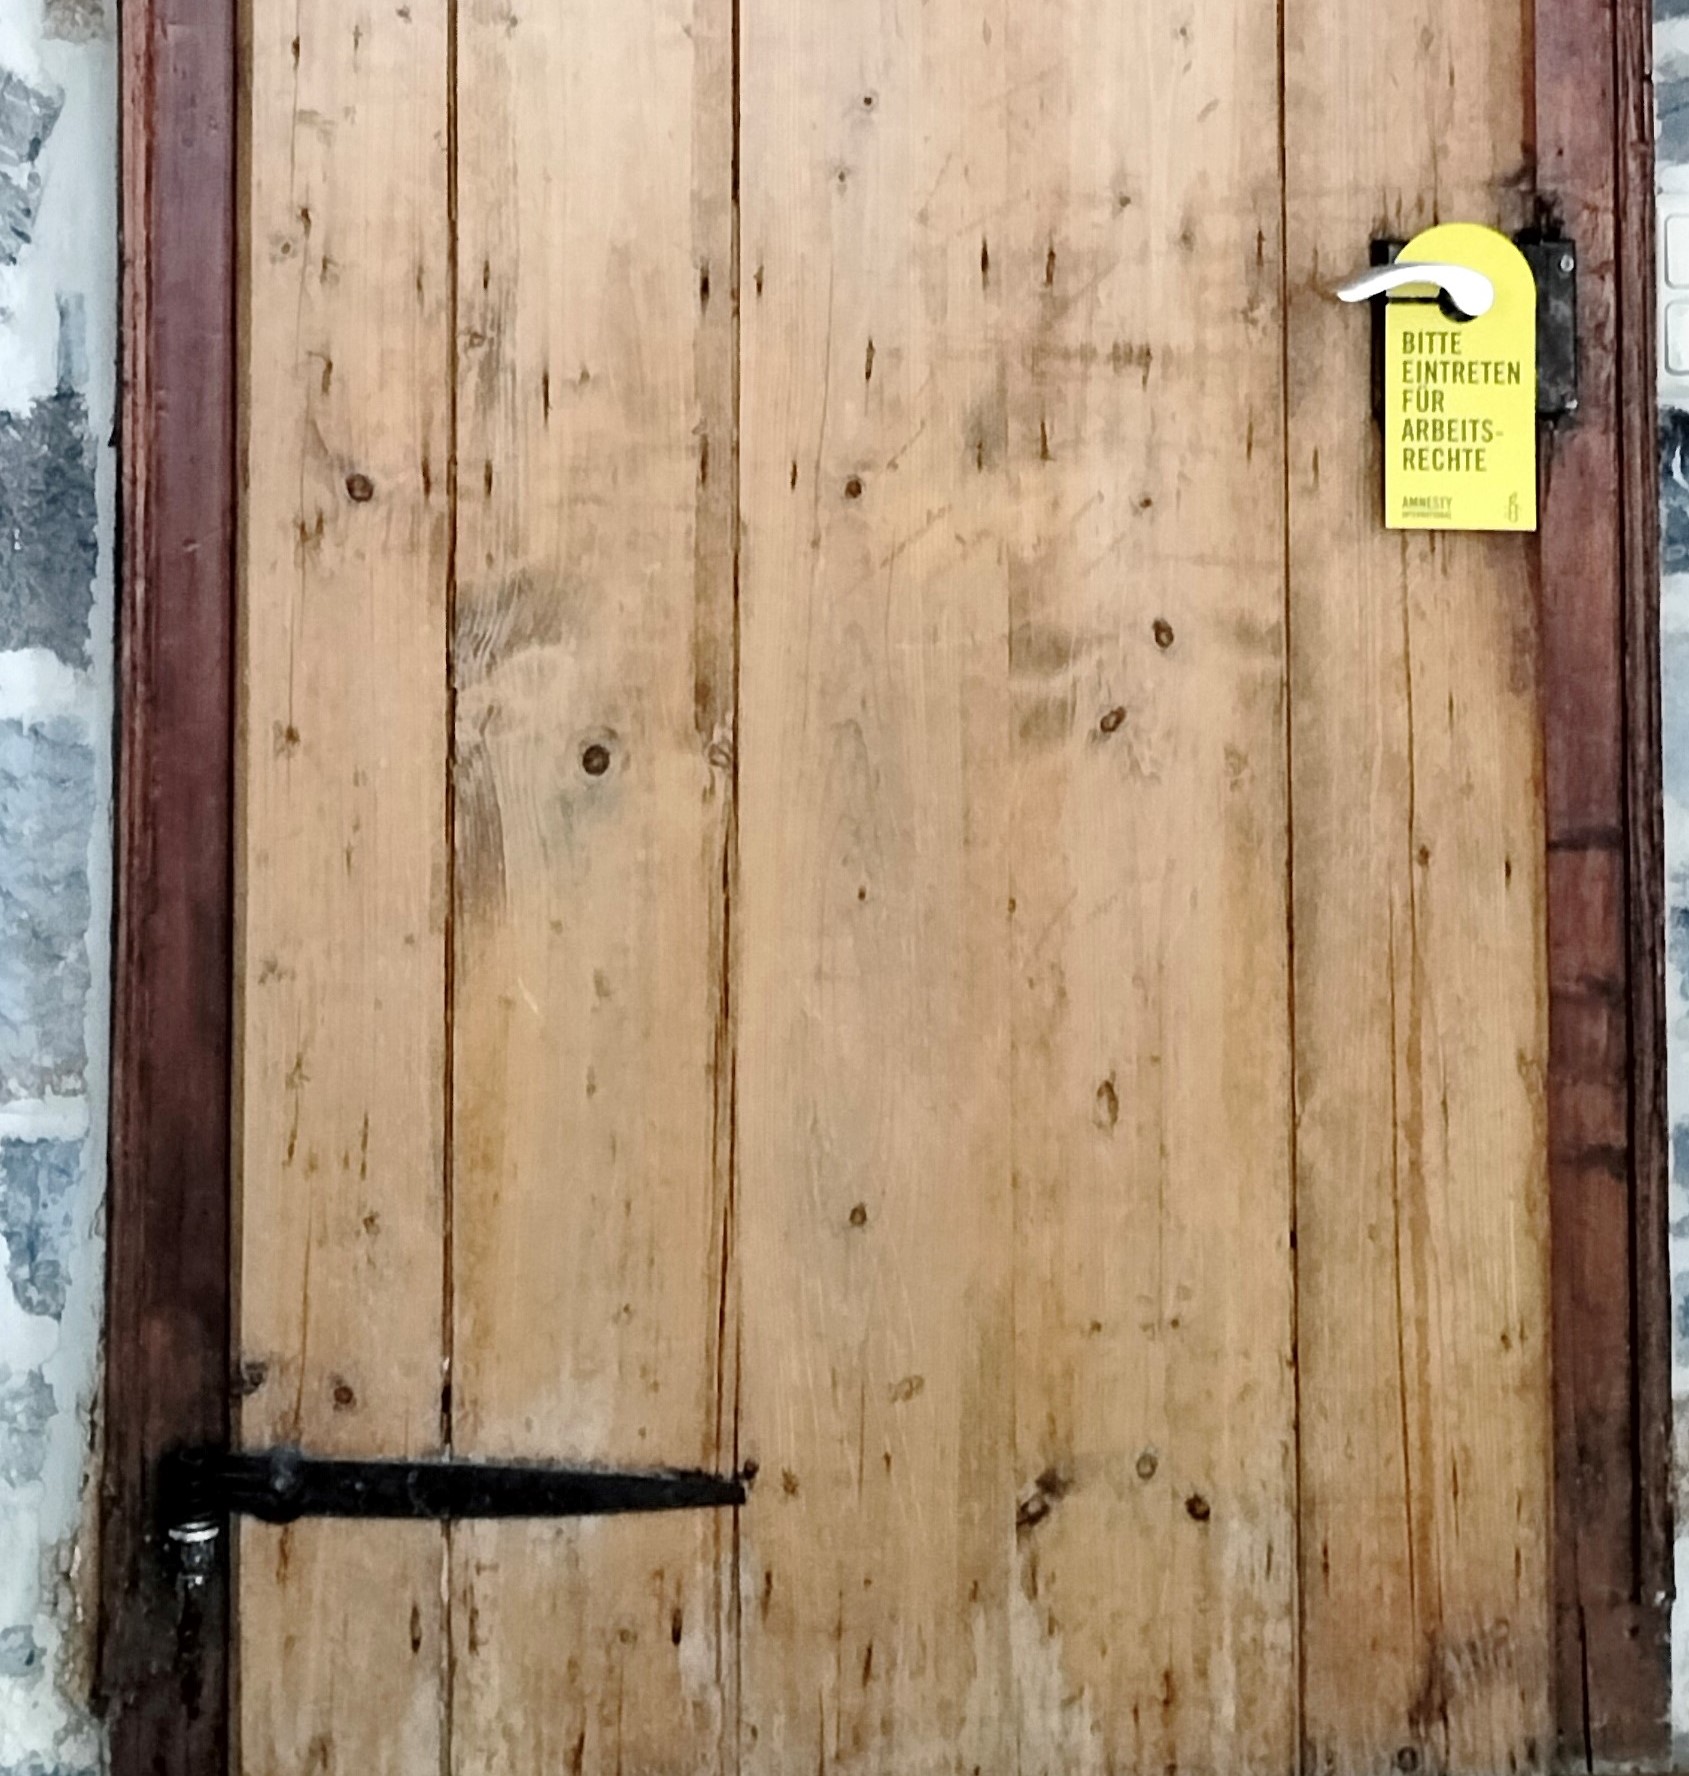 Tür aus alten Holzbrettern mit schwarz lackierten Holzbeschlägen. An der Klinke hängt ein gelbes Schild mit Aufschrift "Bitte eintreten für Arbeitsrechte".